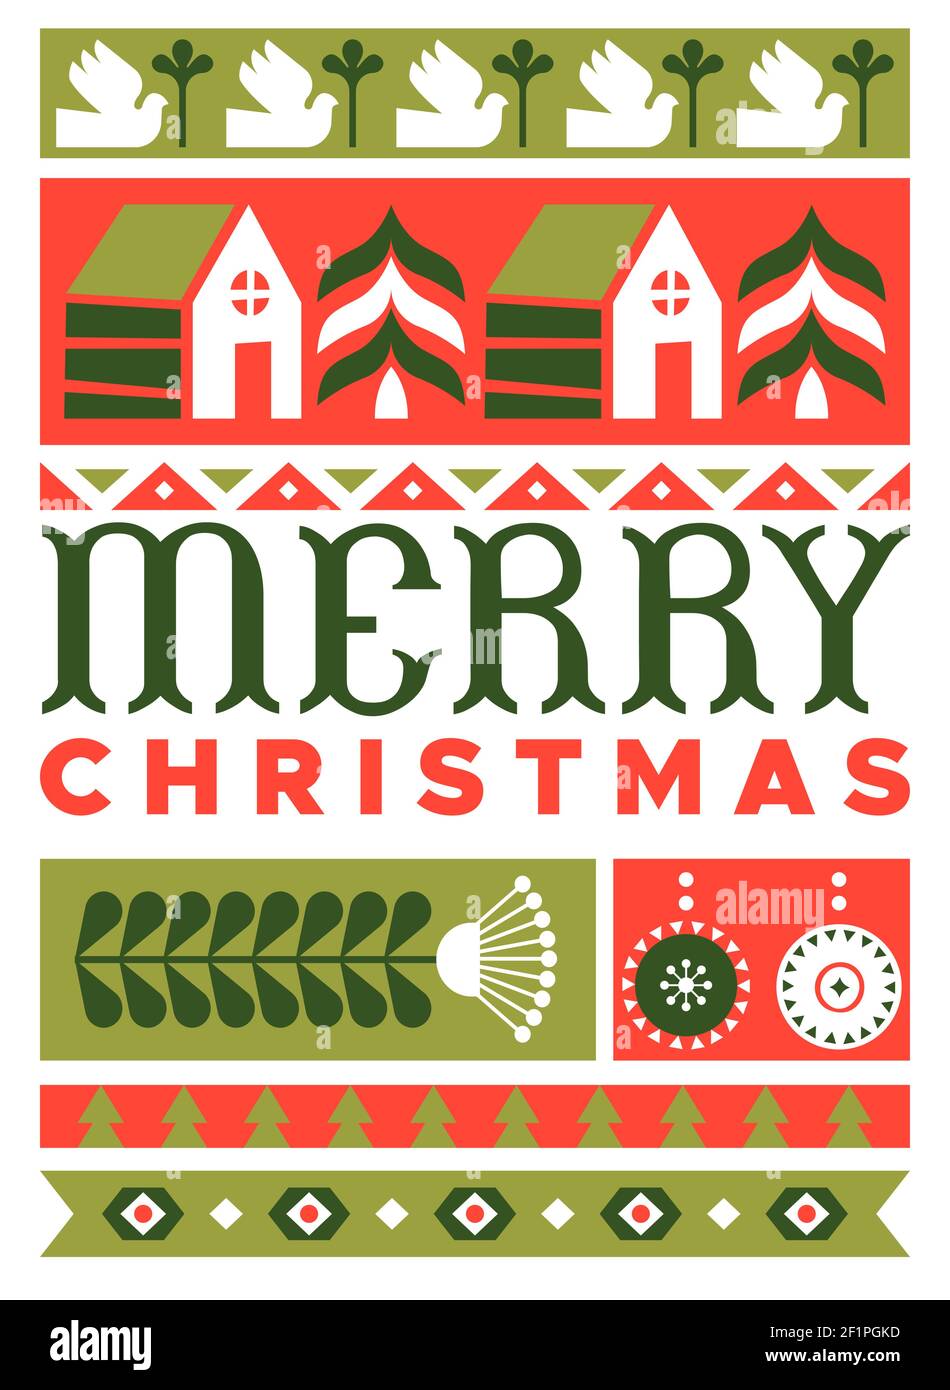 Frohe Weihnachten Grußkarte Illustration in modernen minimalistischen Folk Art Stil. Festliches Feiertagsdesign mit geometrischer flacher nordischer Dekoration. Enthält Stock Vektor